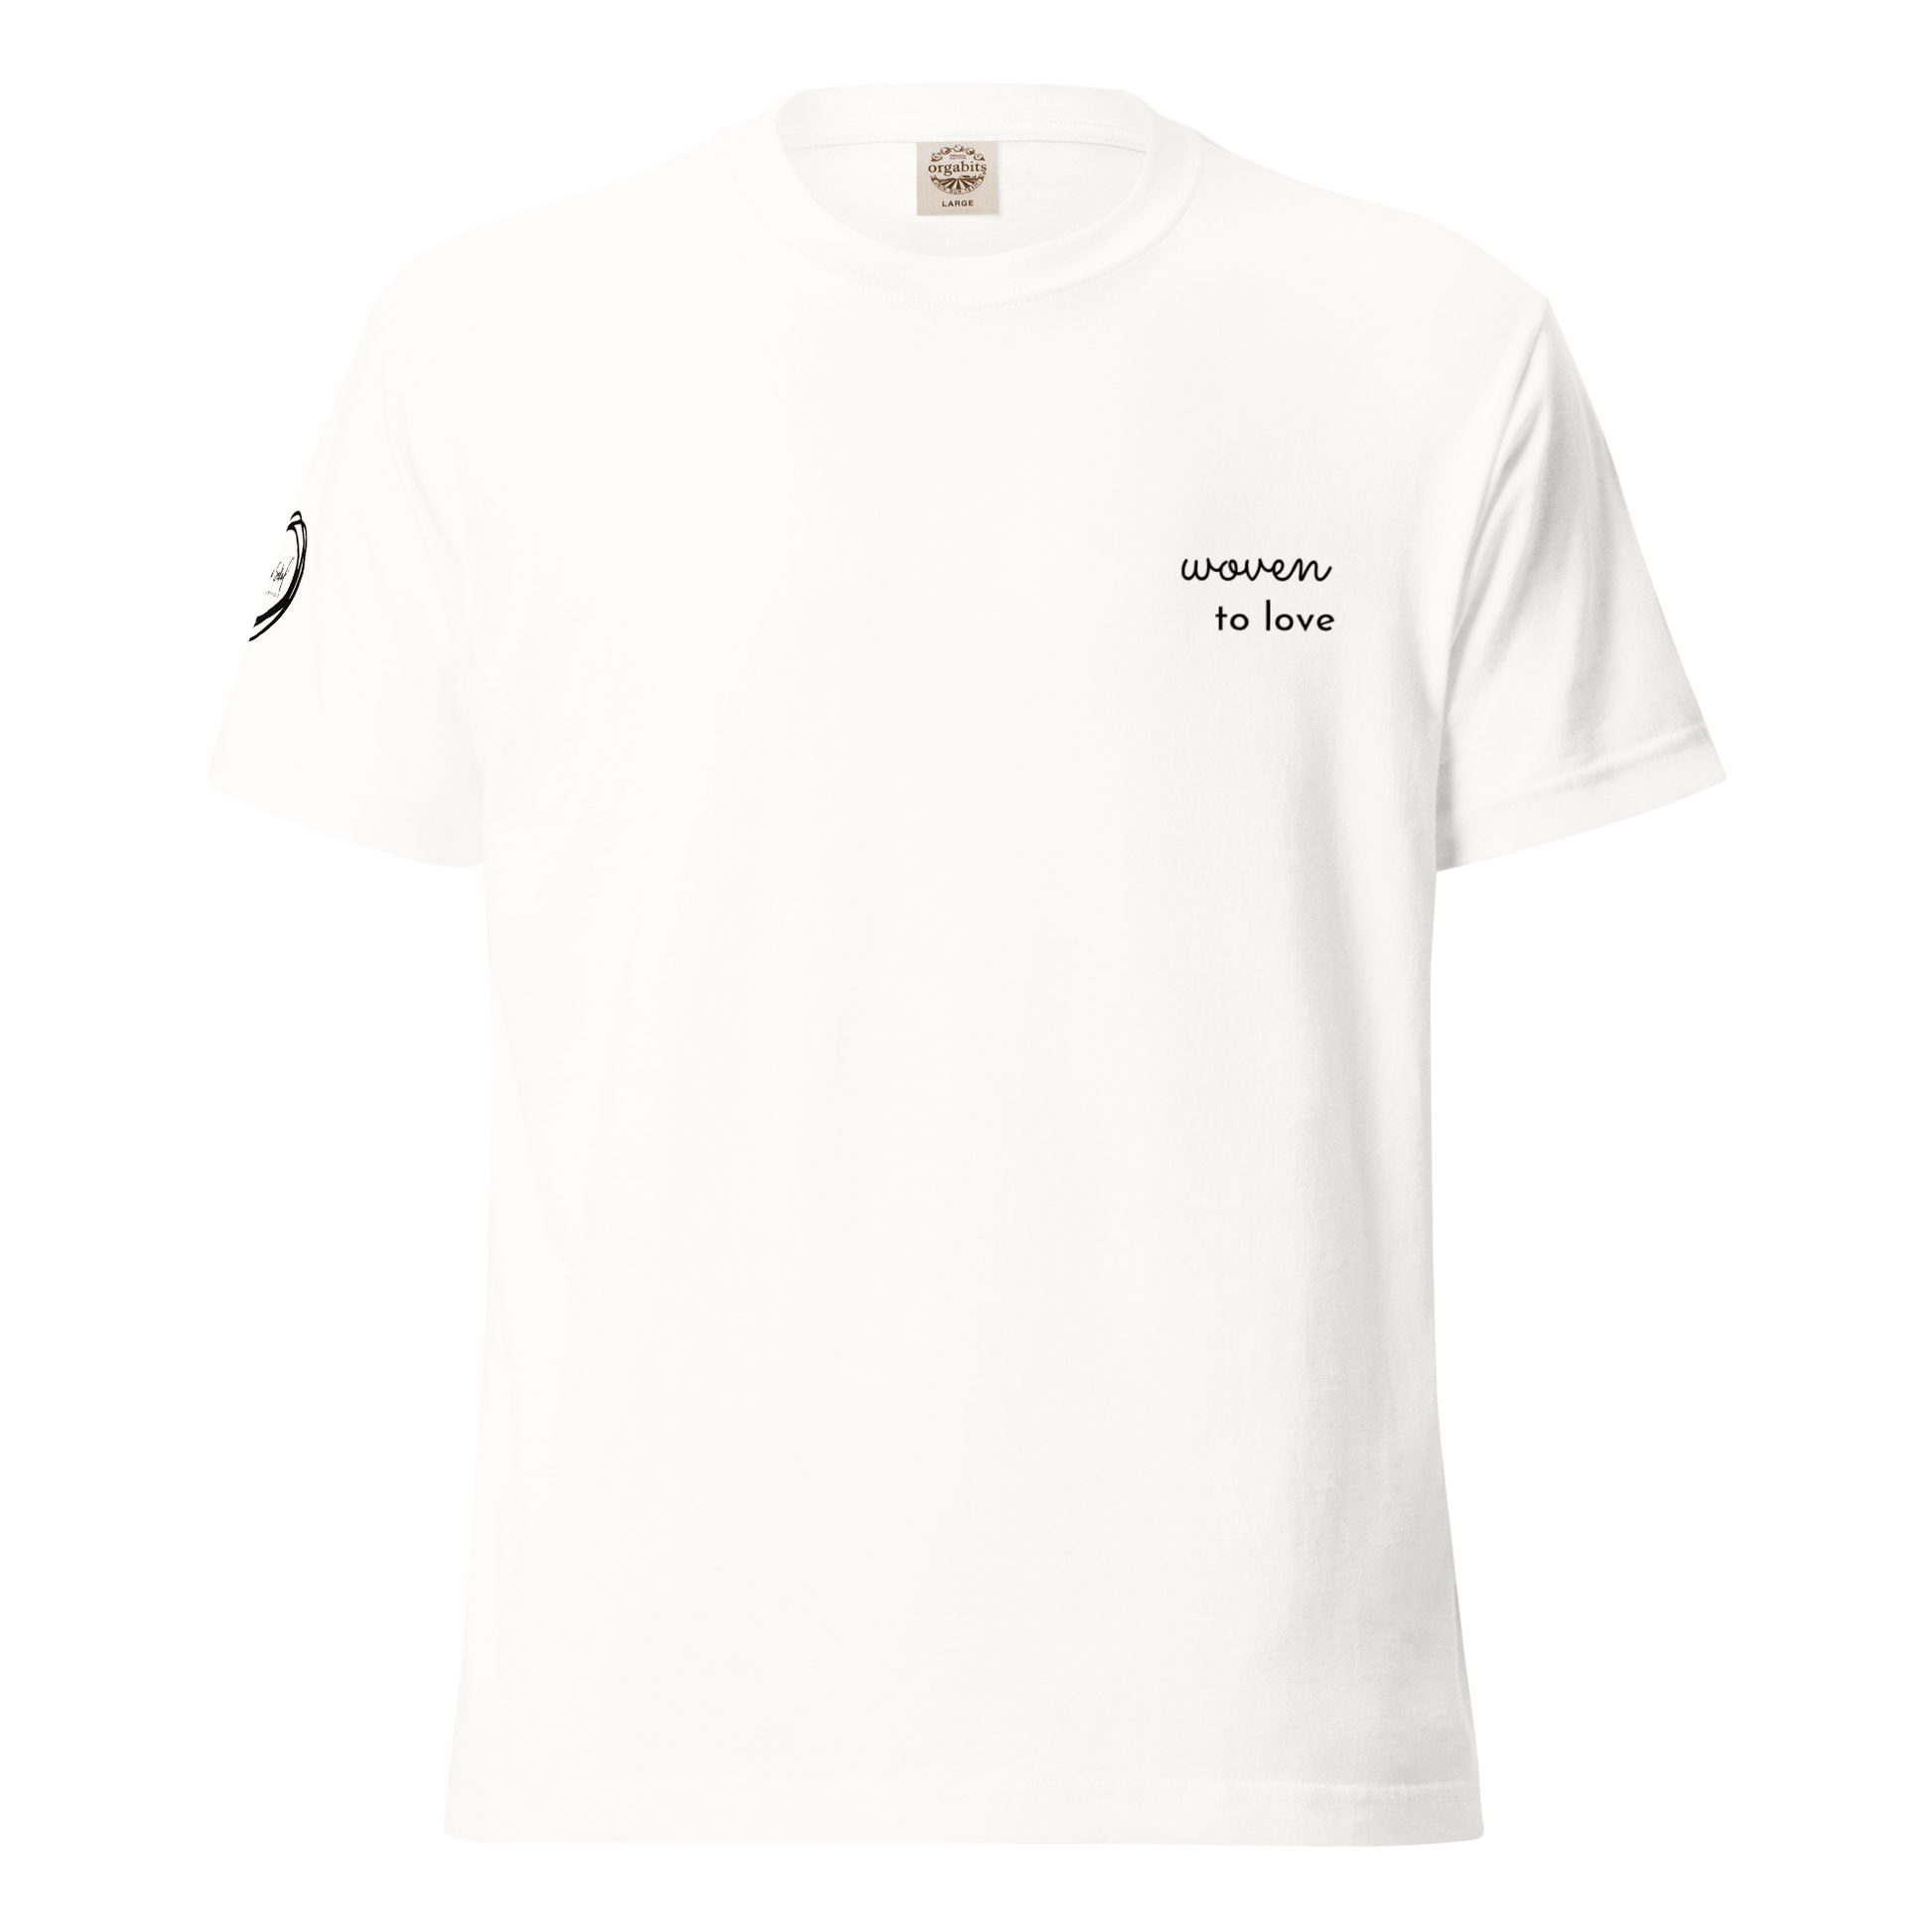 Woven to Love - Lightweight cotton t-shirt